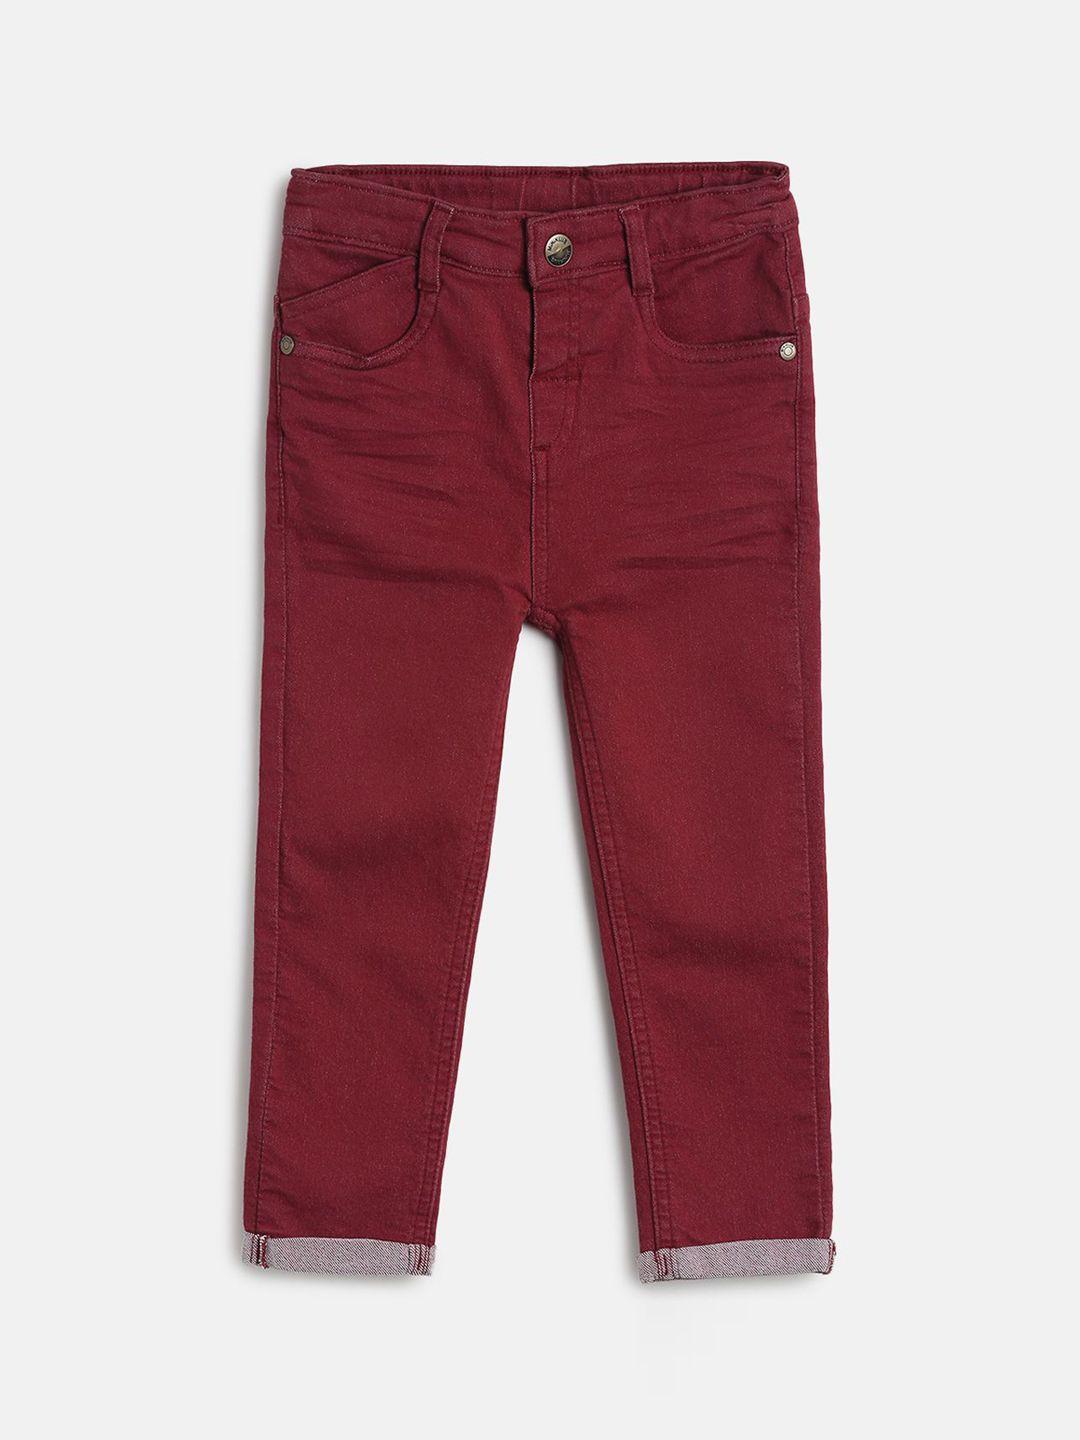 mini klub boys red denim jeans